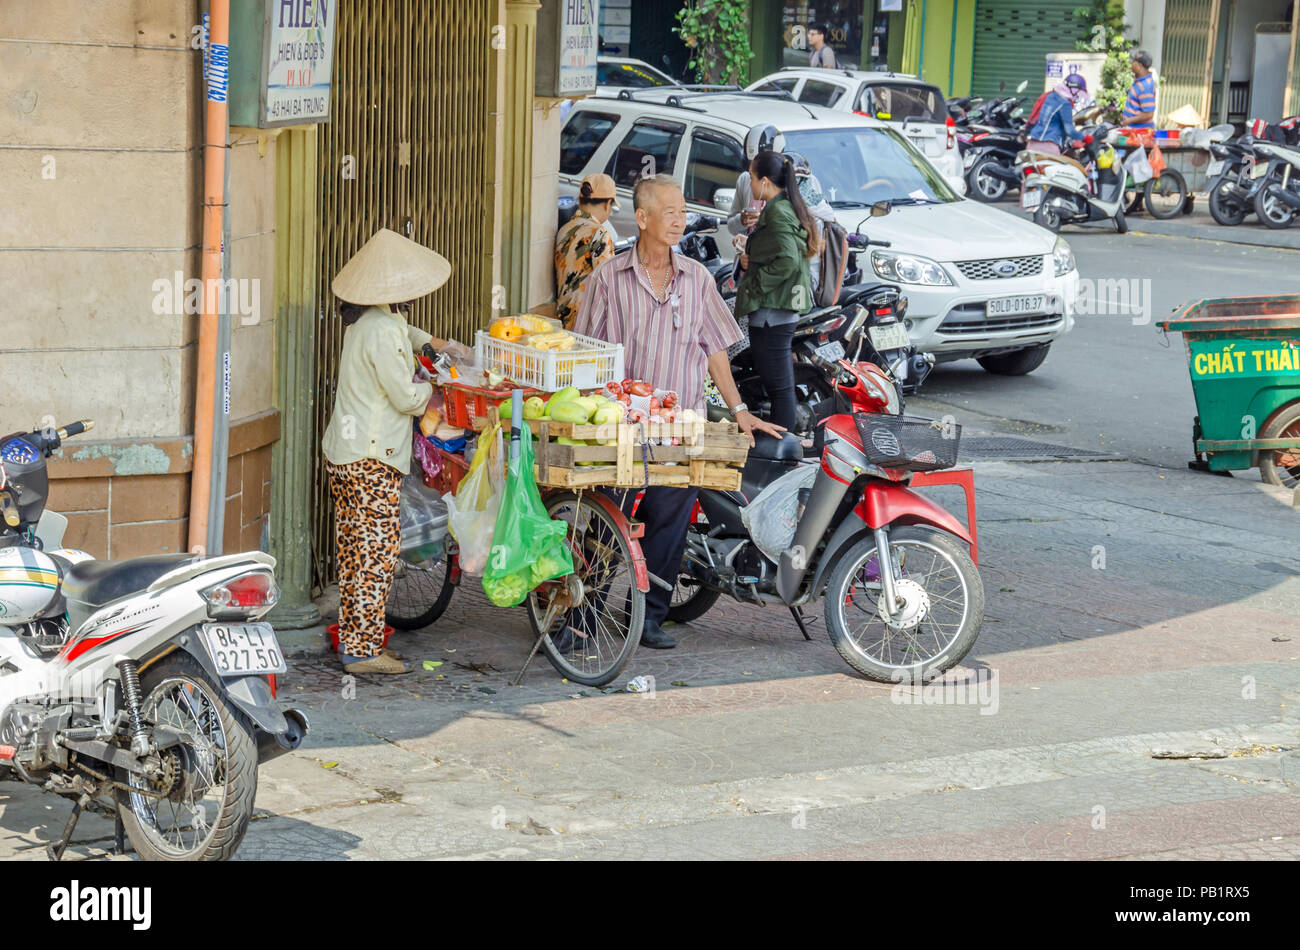 Ho Chi Minh City, Vietnam - 4. April 2018: Street Scene - traditionelle Verkäuferin mit Ihrem Fahrrad voll mit Gemüse geladen, Moped Fahrer und pedestri Stockfoto